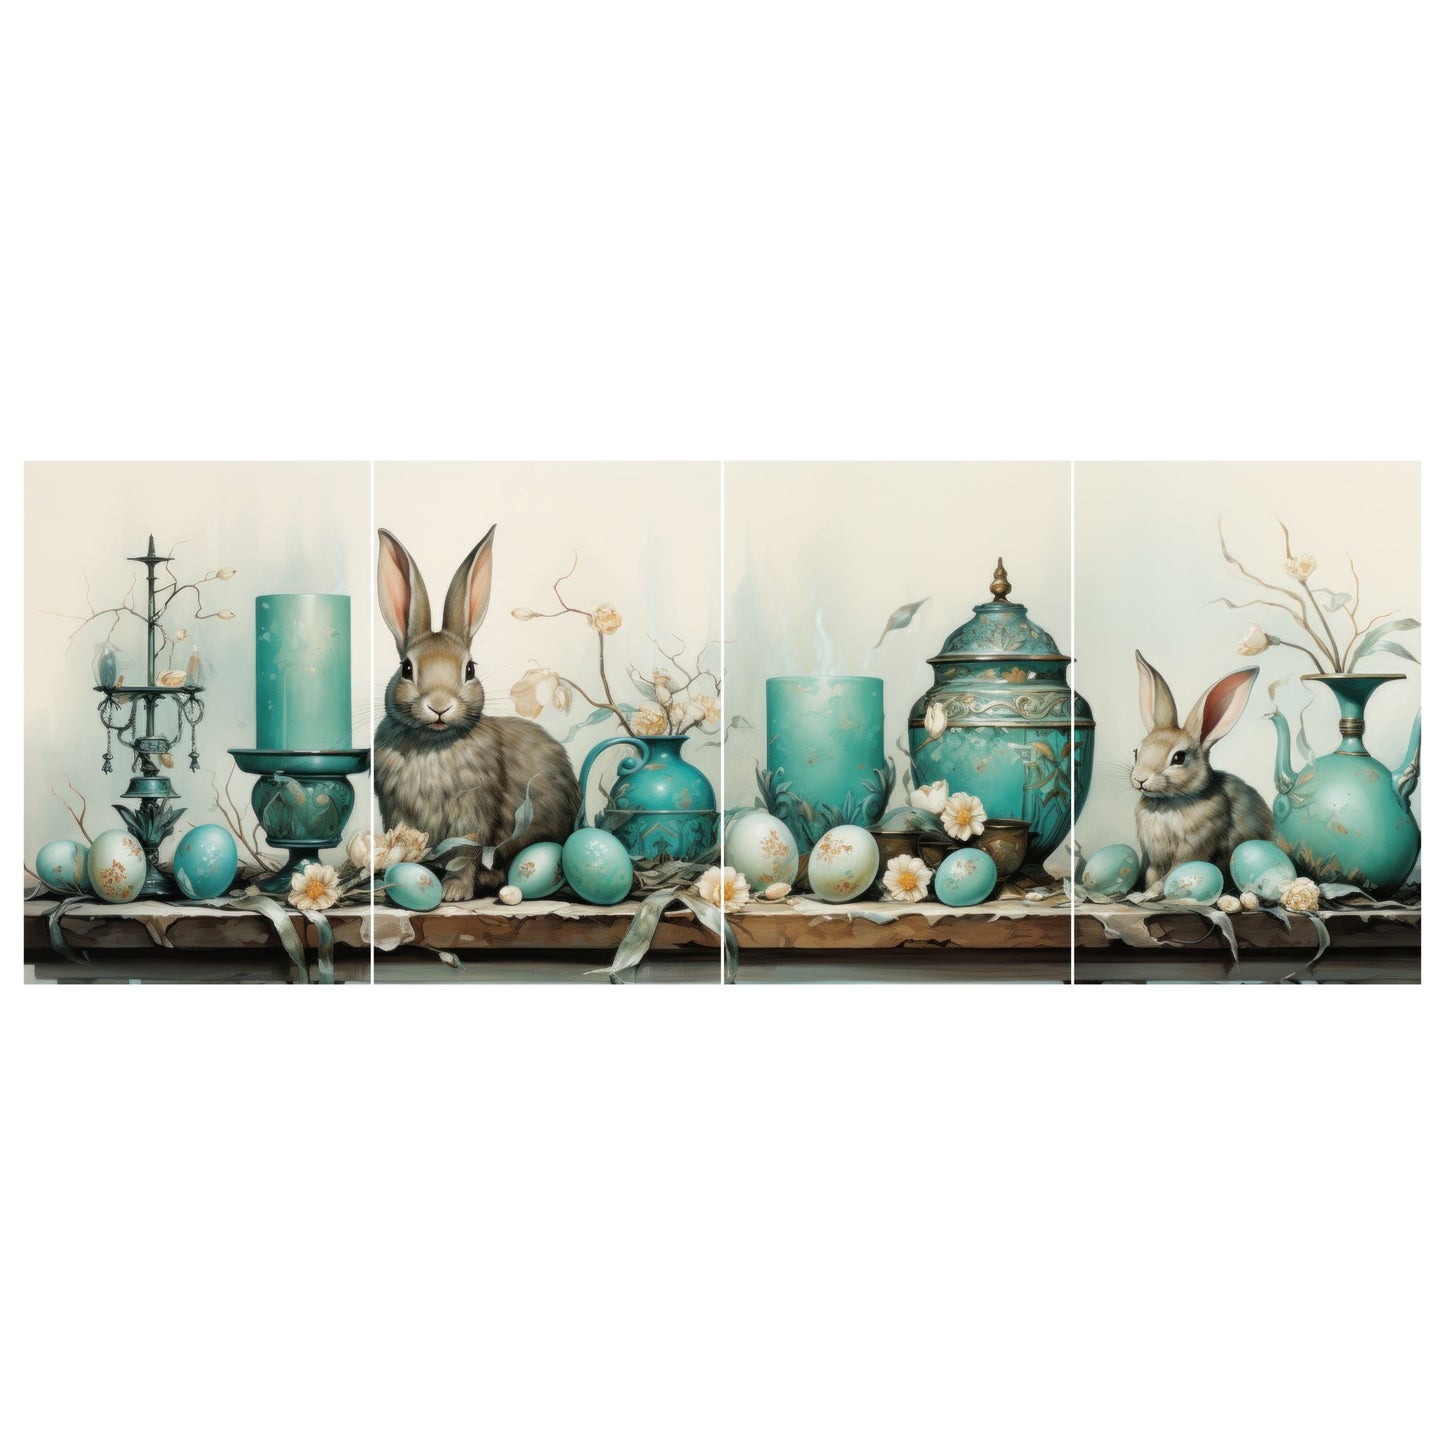 Grafisk illustrasjon med fire paneler danner et vakkert langbord dekorert med påskepynt, inkludert lys, krukker, vaser med blomster og påskeegg, alt i duse turkise, beige og brune farger. To sjarmerende brune kaniner legger til en ekstra touch av sjarm til motivet. 